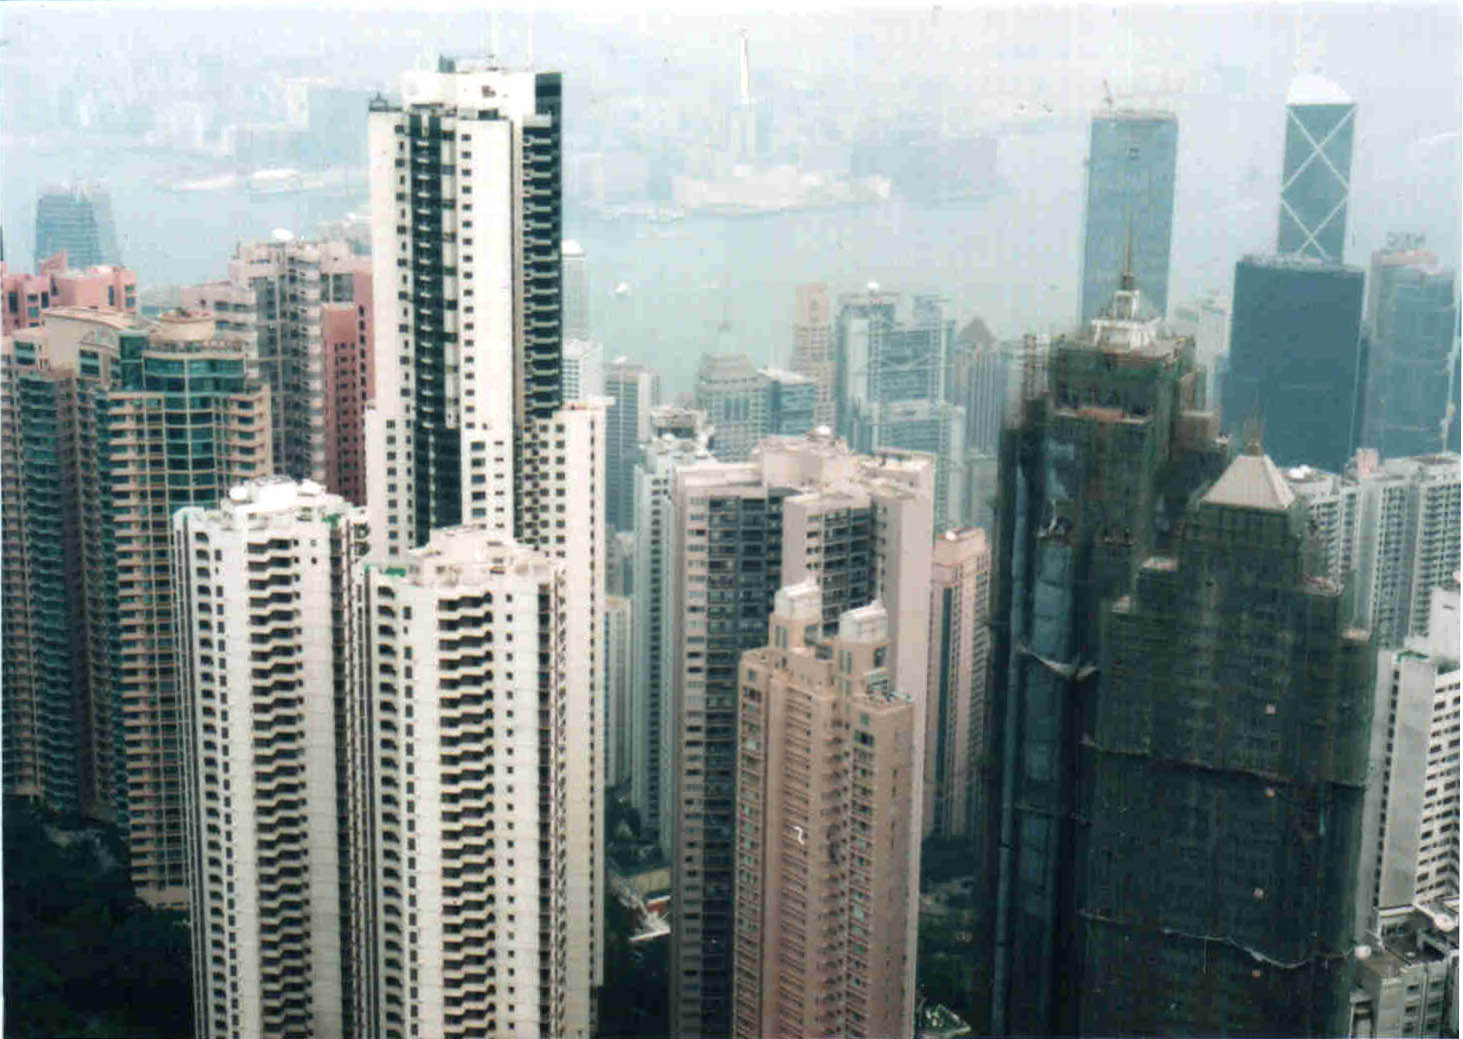 Hong Kong Island apartments